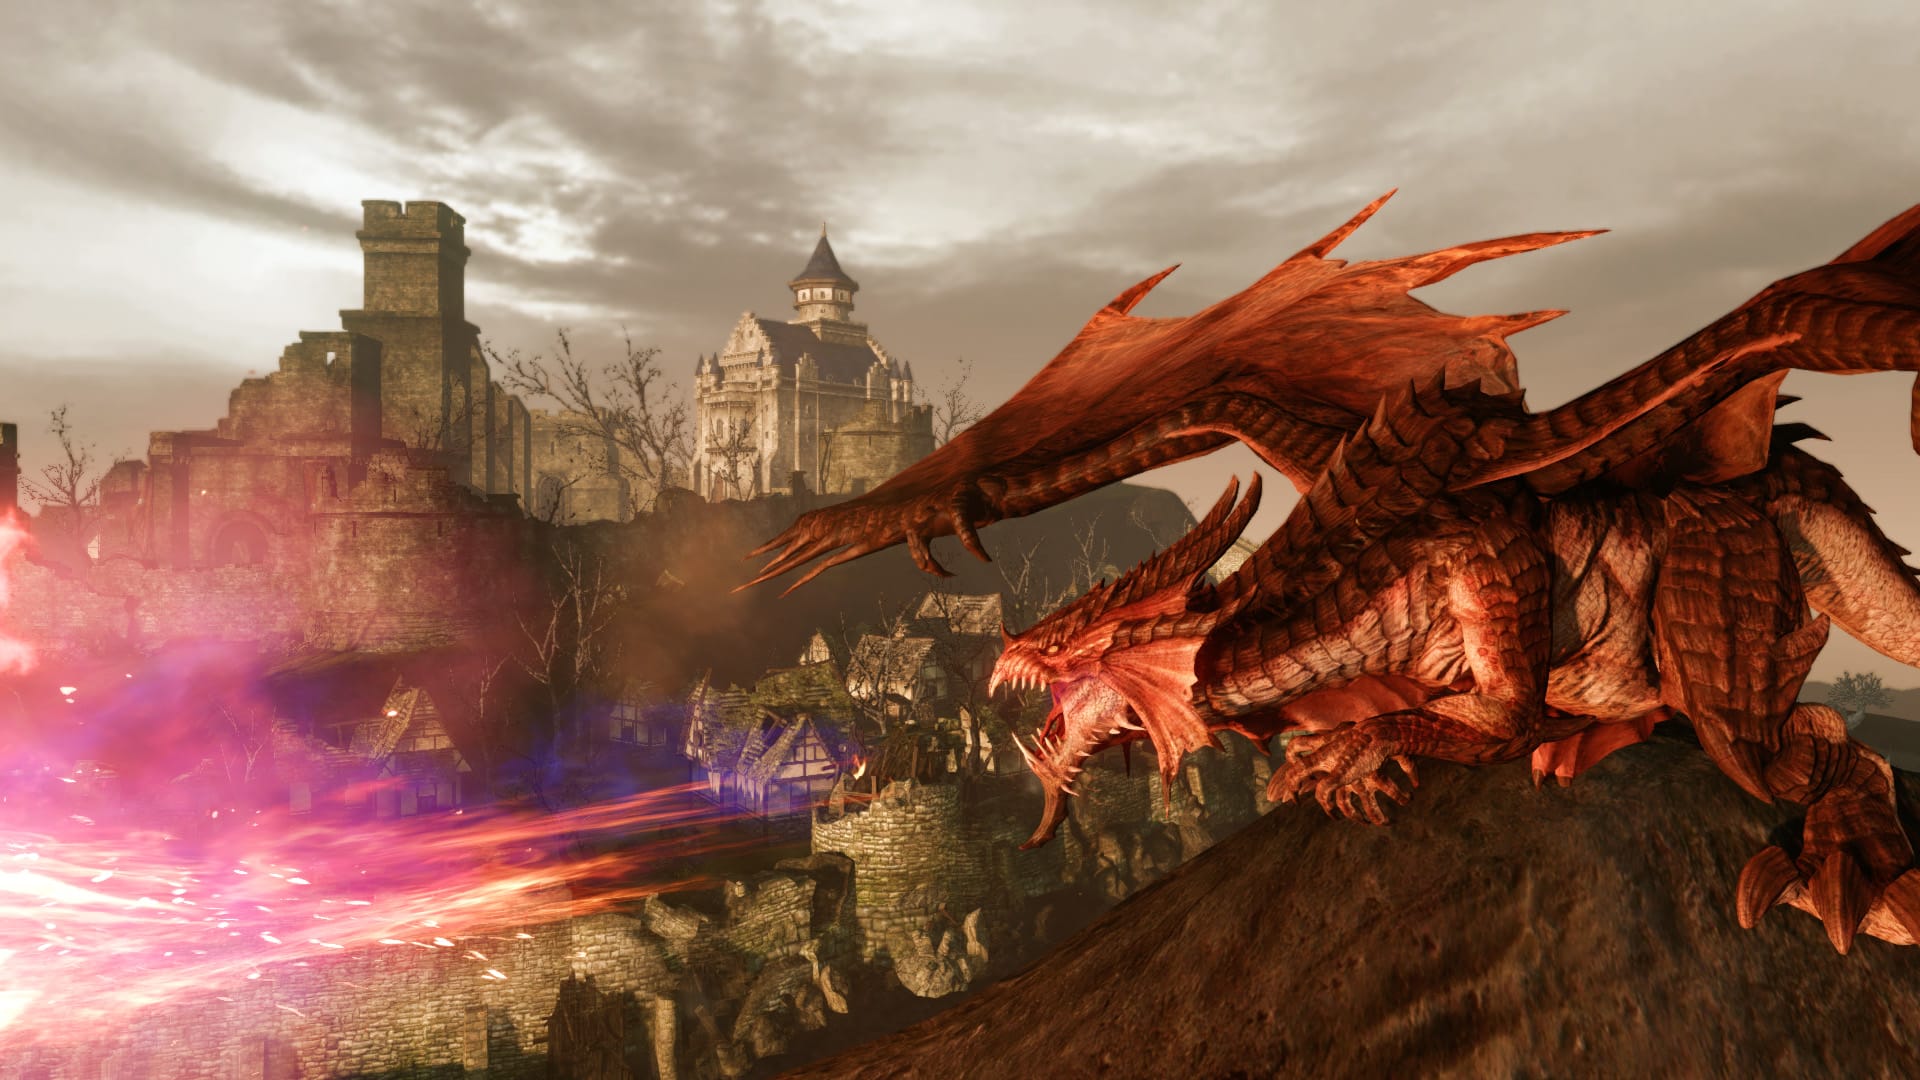 Καλύτερα παιχνίδια MMORPG: Arcehage. Η εικόνα δείχνει έναν δράκο κοντά σε μια πόλη